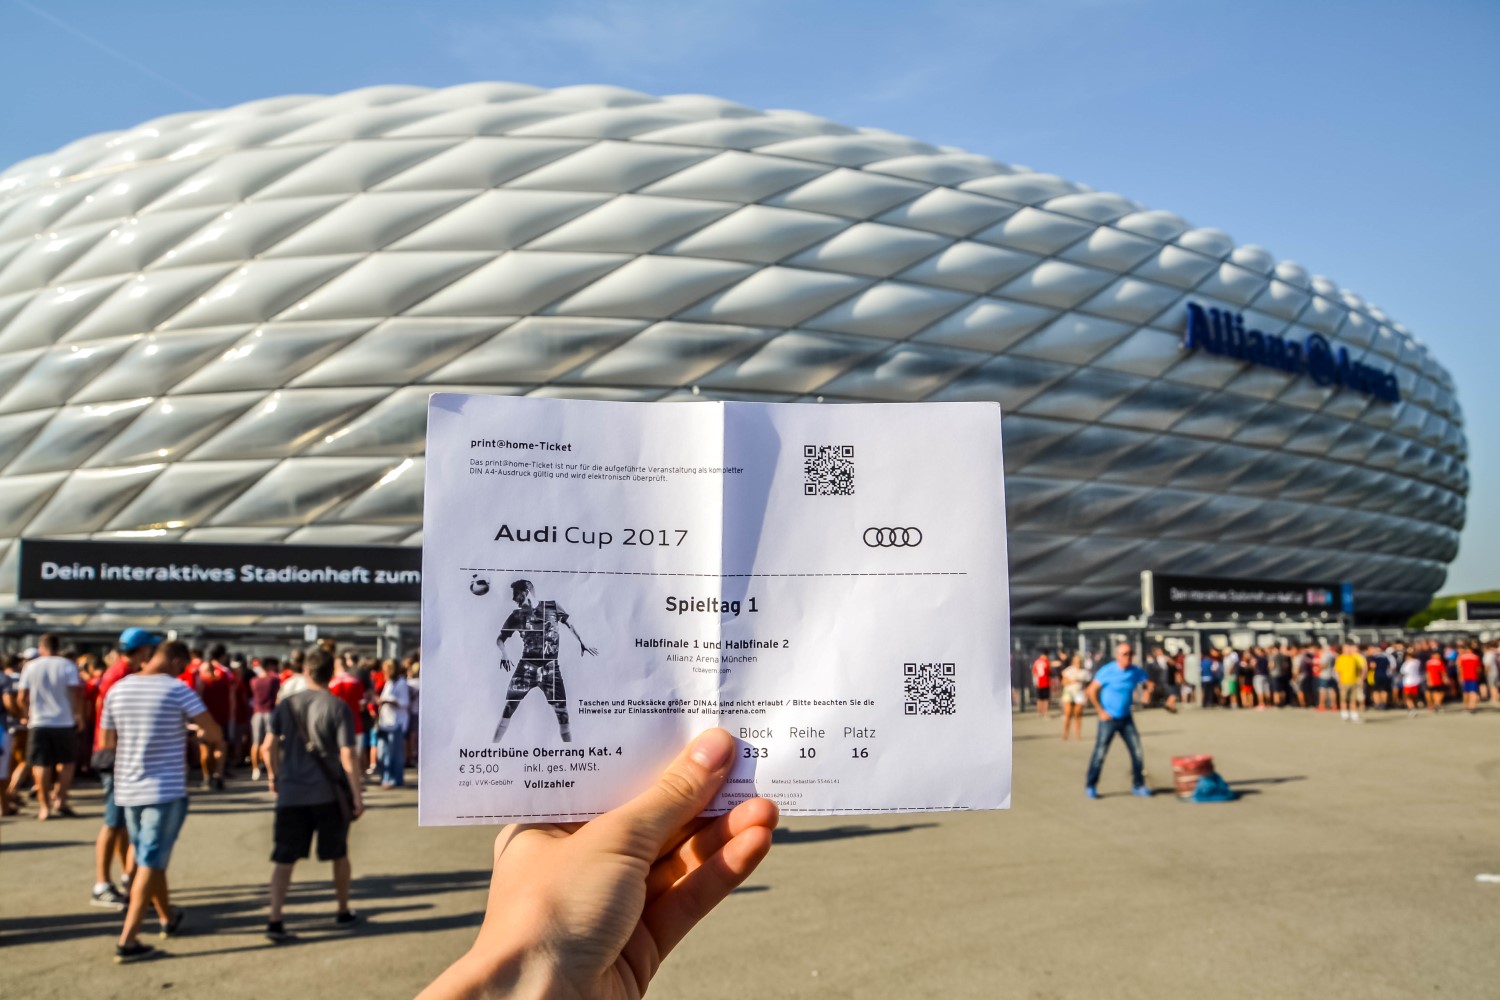 Allianz Arena, Bayern Monachium, Niemcy - bele kaj, blog podróżniczy po śląsku